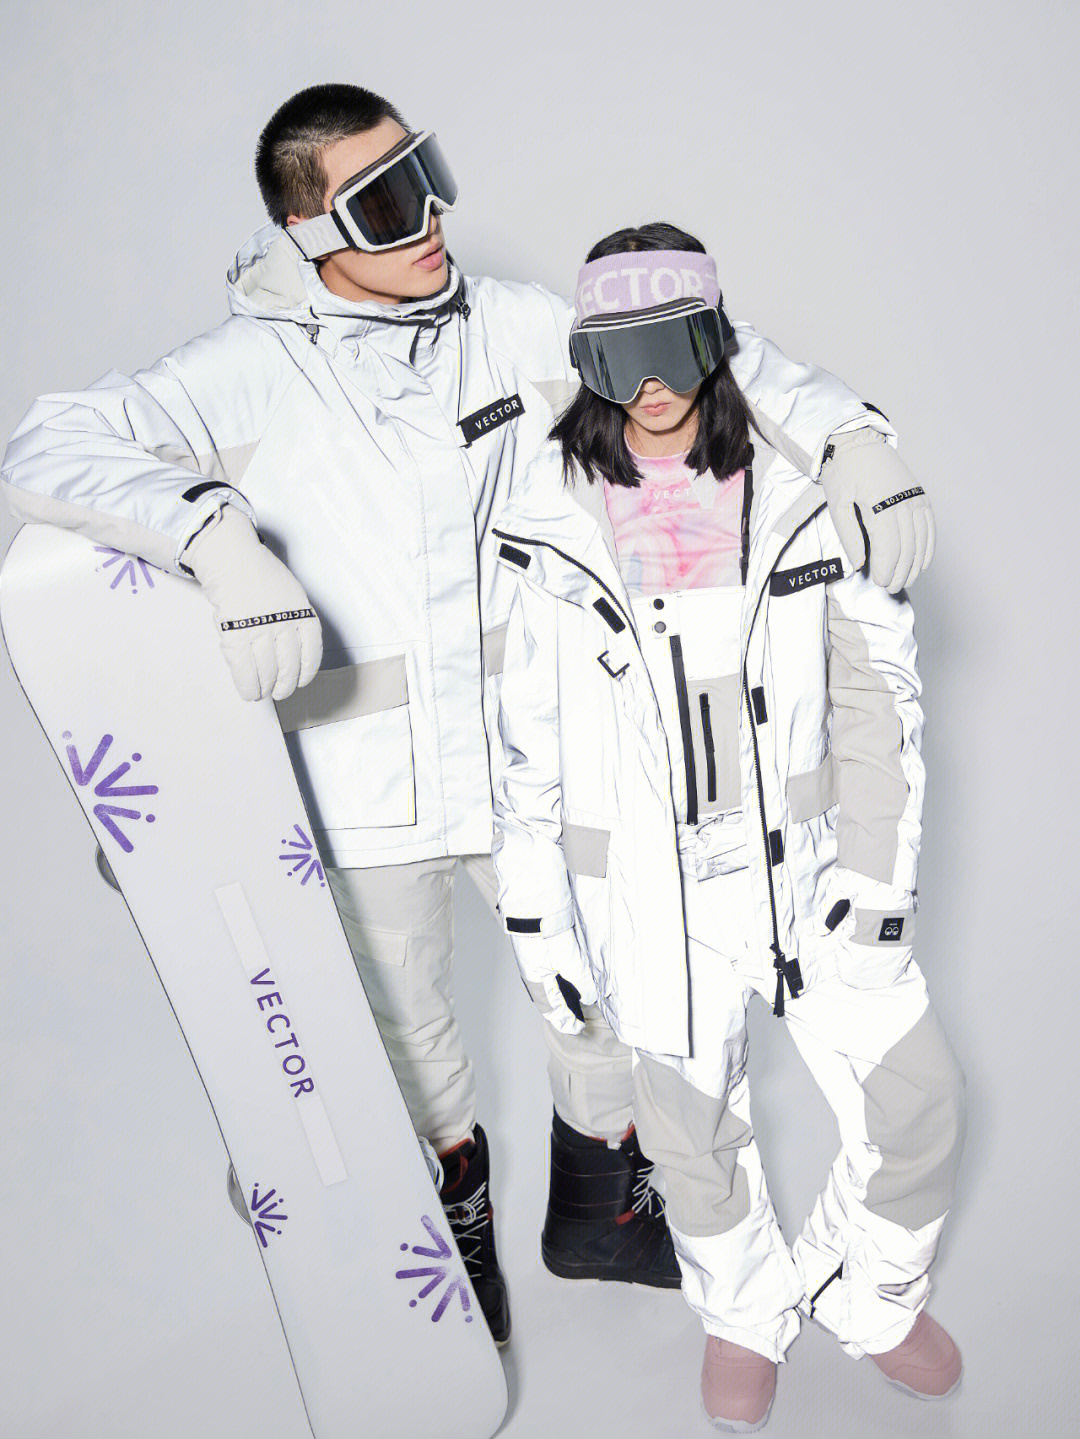 中国冬奥会滑雪队服图片